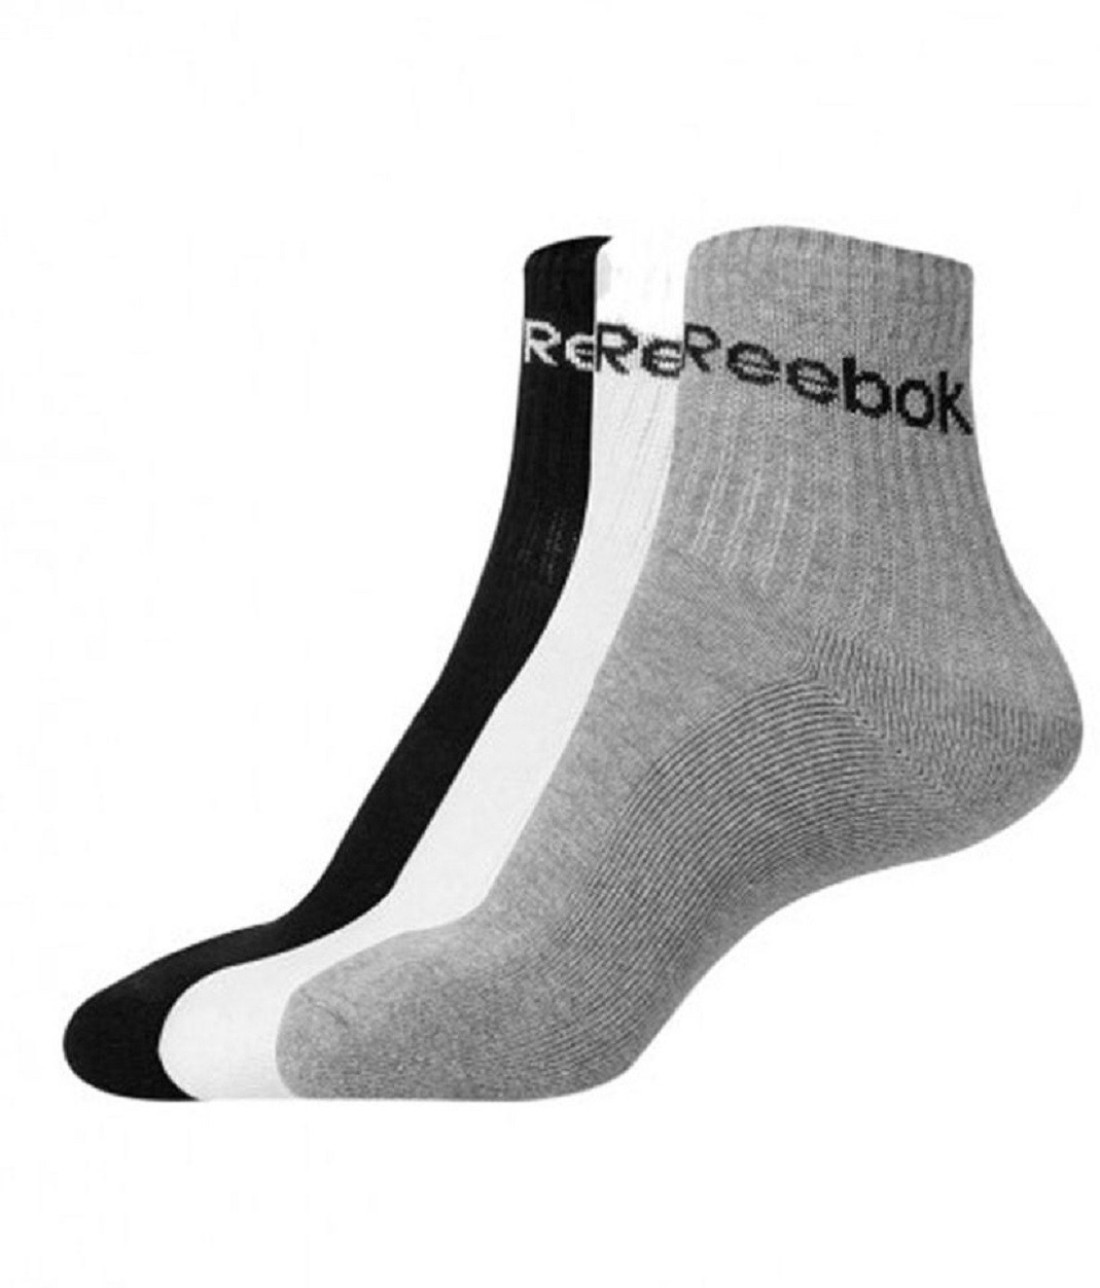 reebok socks online